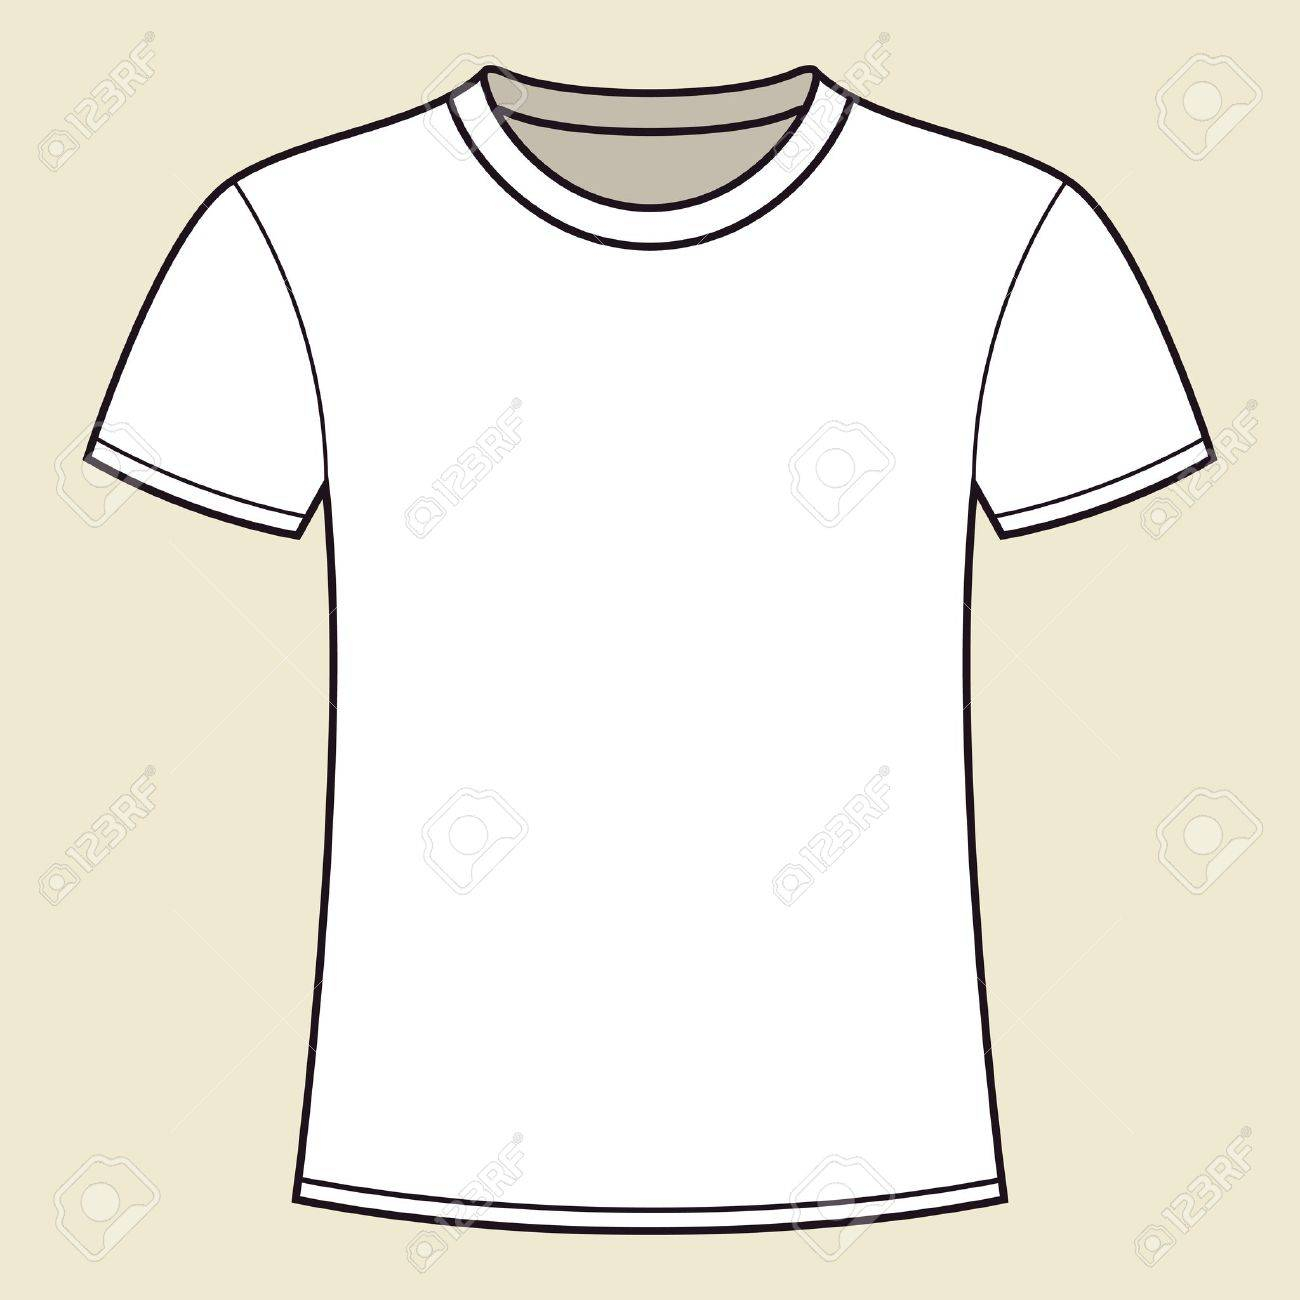 Blank Weißes T Shirt Vorlage Lizenzfrei Nutzbare SVG  For Blank Tee Shirt Template